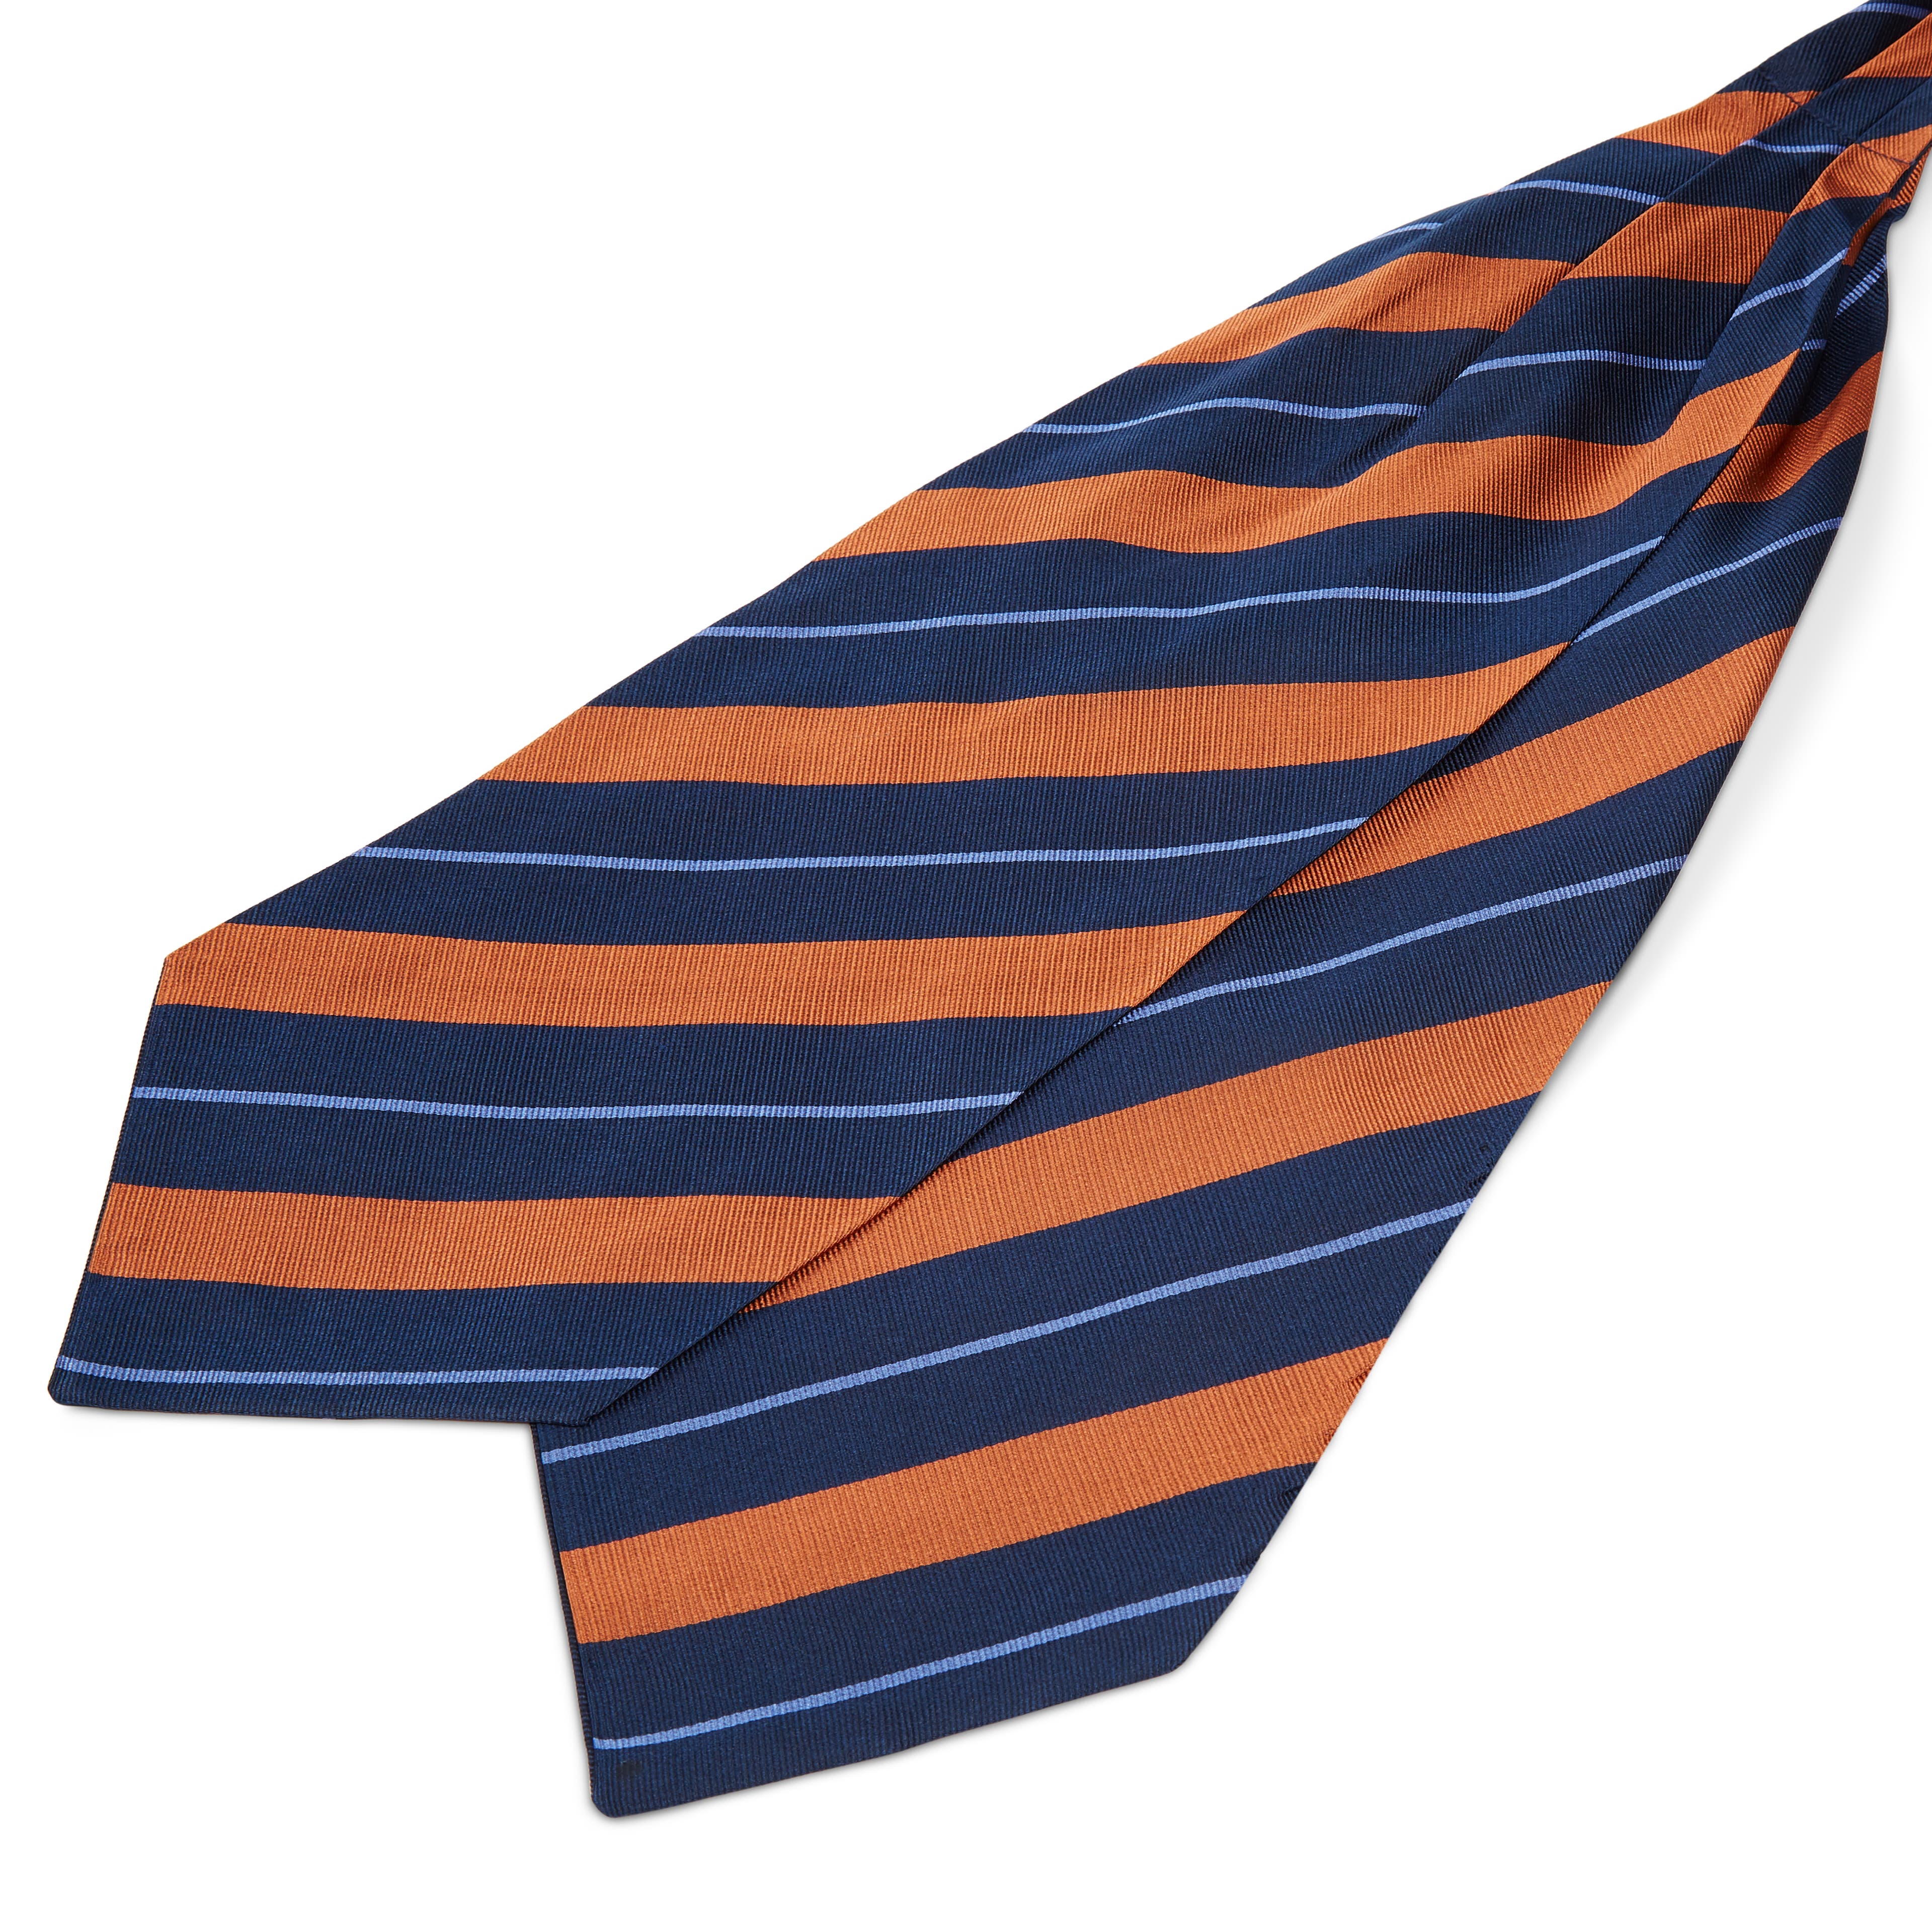 Ciemnogranatowy krawat jedwabny w pastelowe pomarańczowo-niebieskie paski